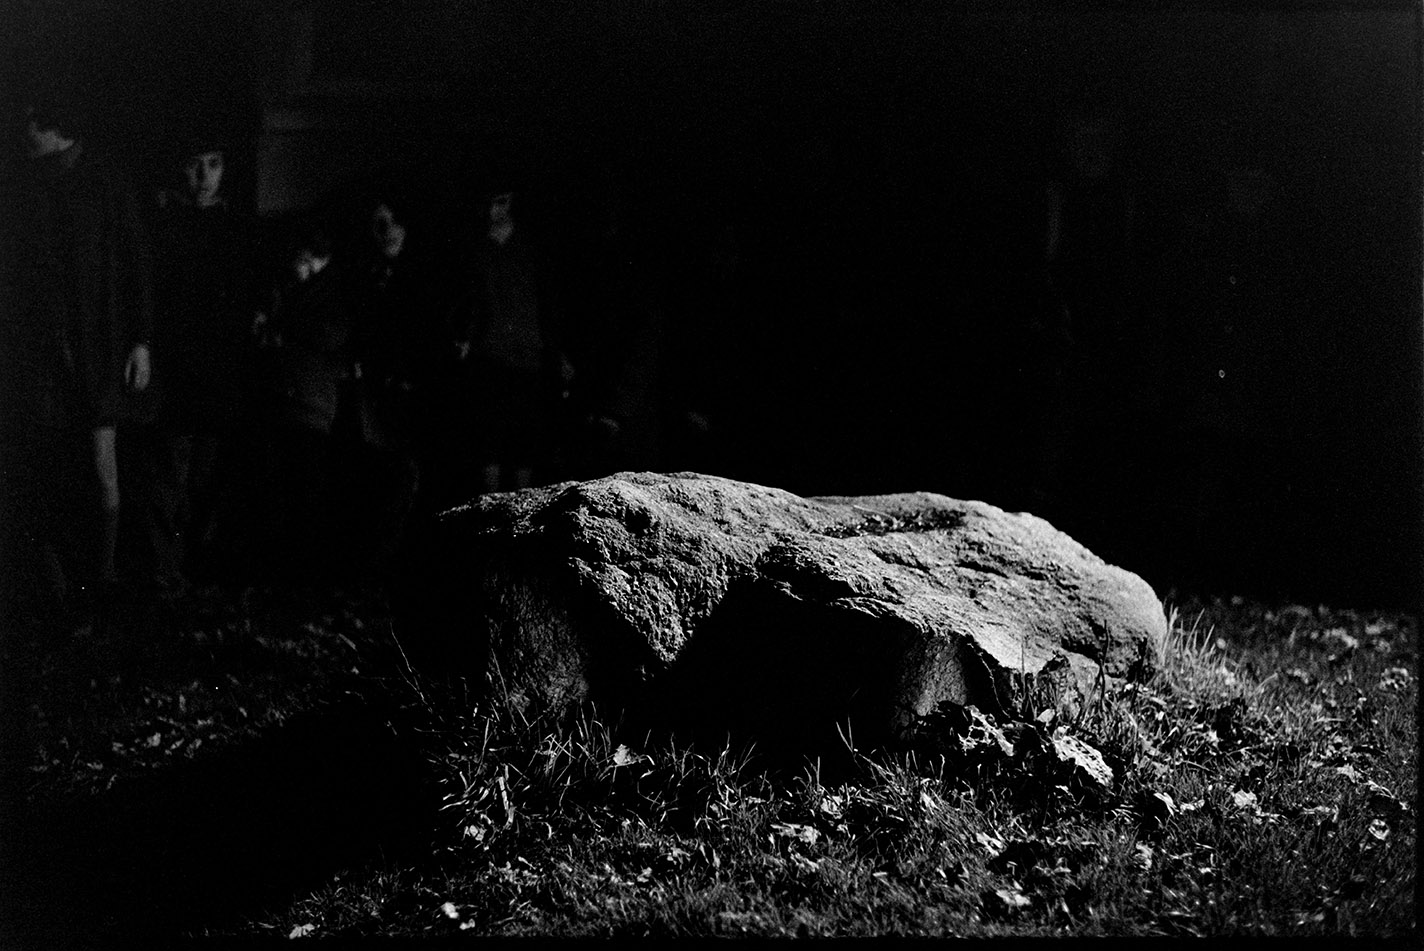 Turning the Devil's Stone, Shebbear, 5 November 1974